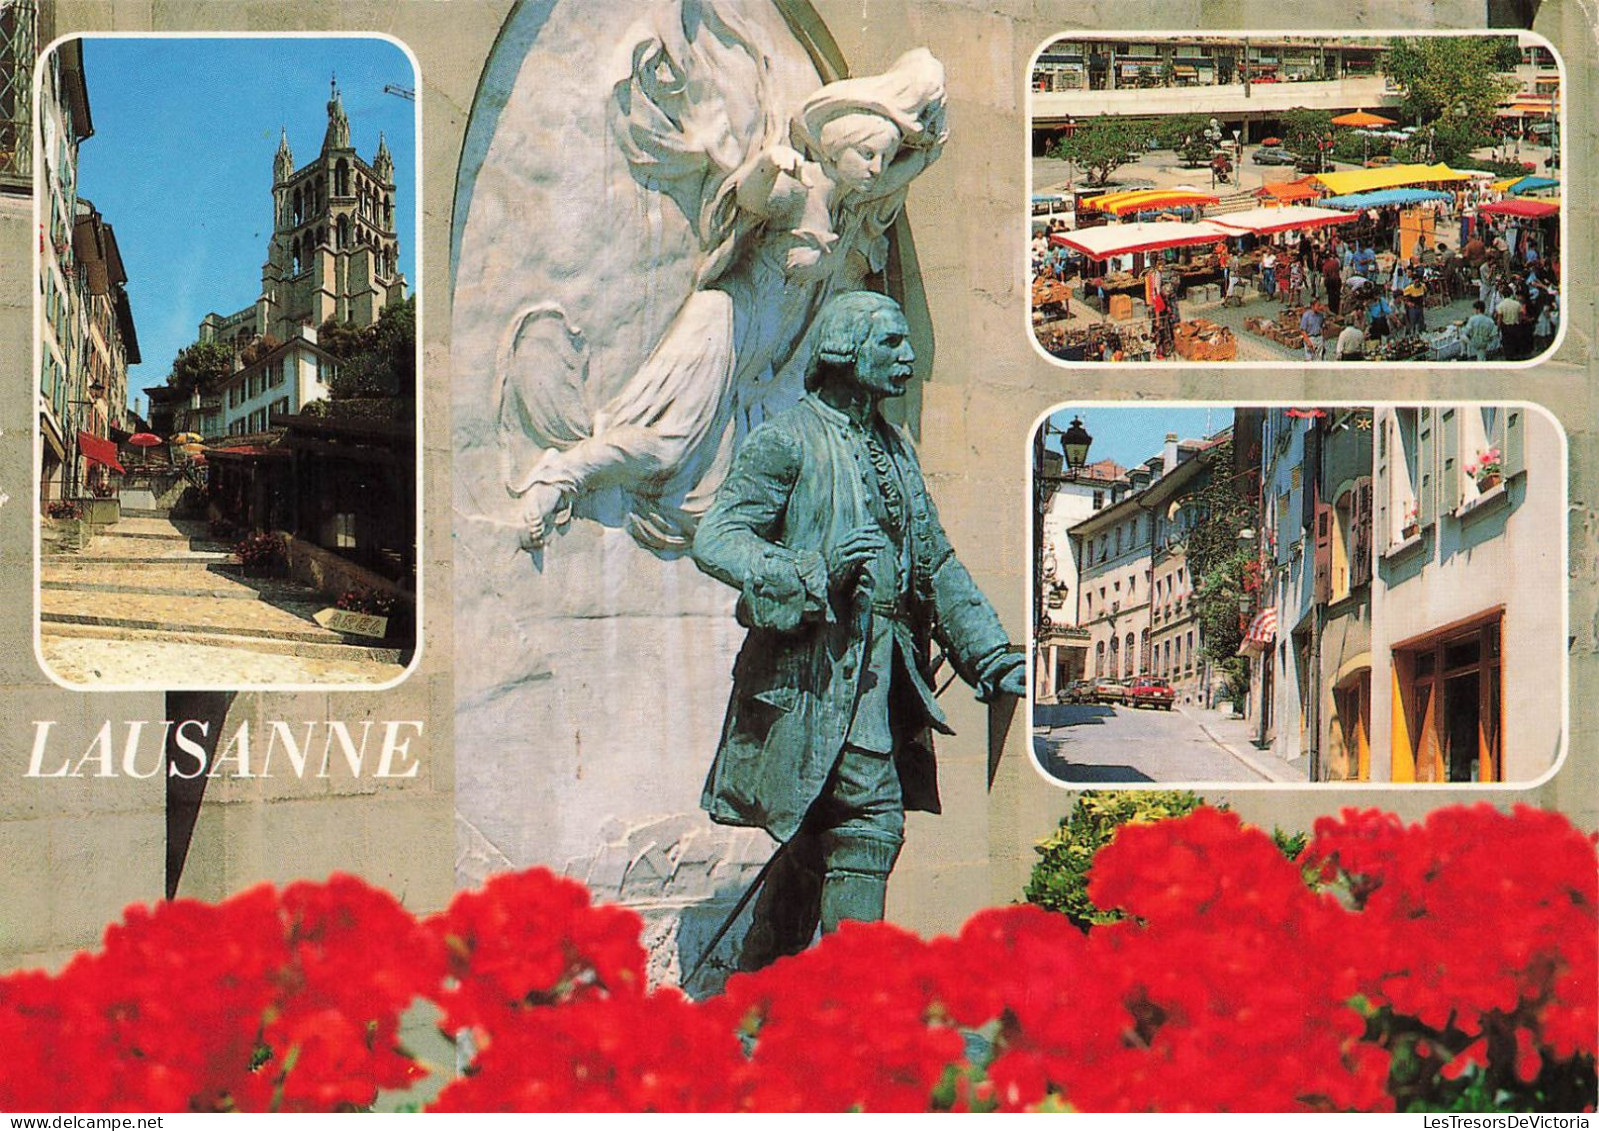 SUISSE - Lausanne - Marché - Statue - Cathédrale - Rue - Carte Postale - Lausanne